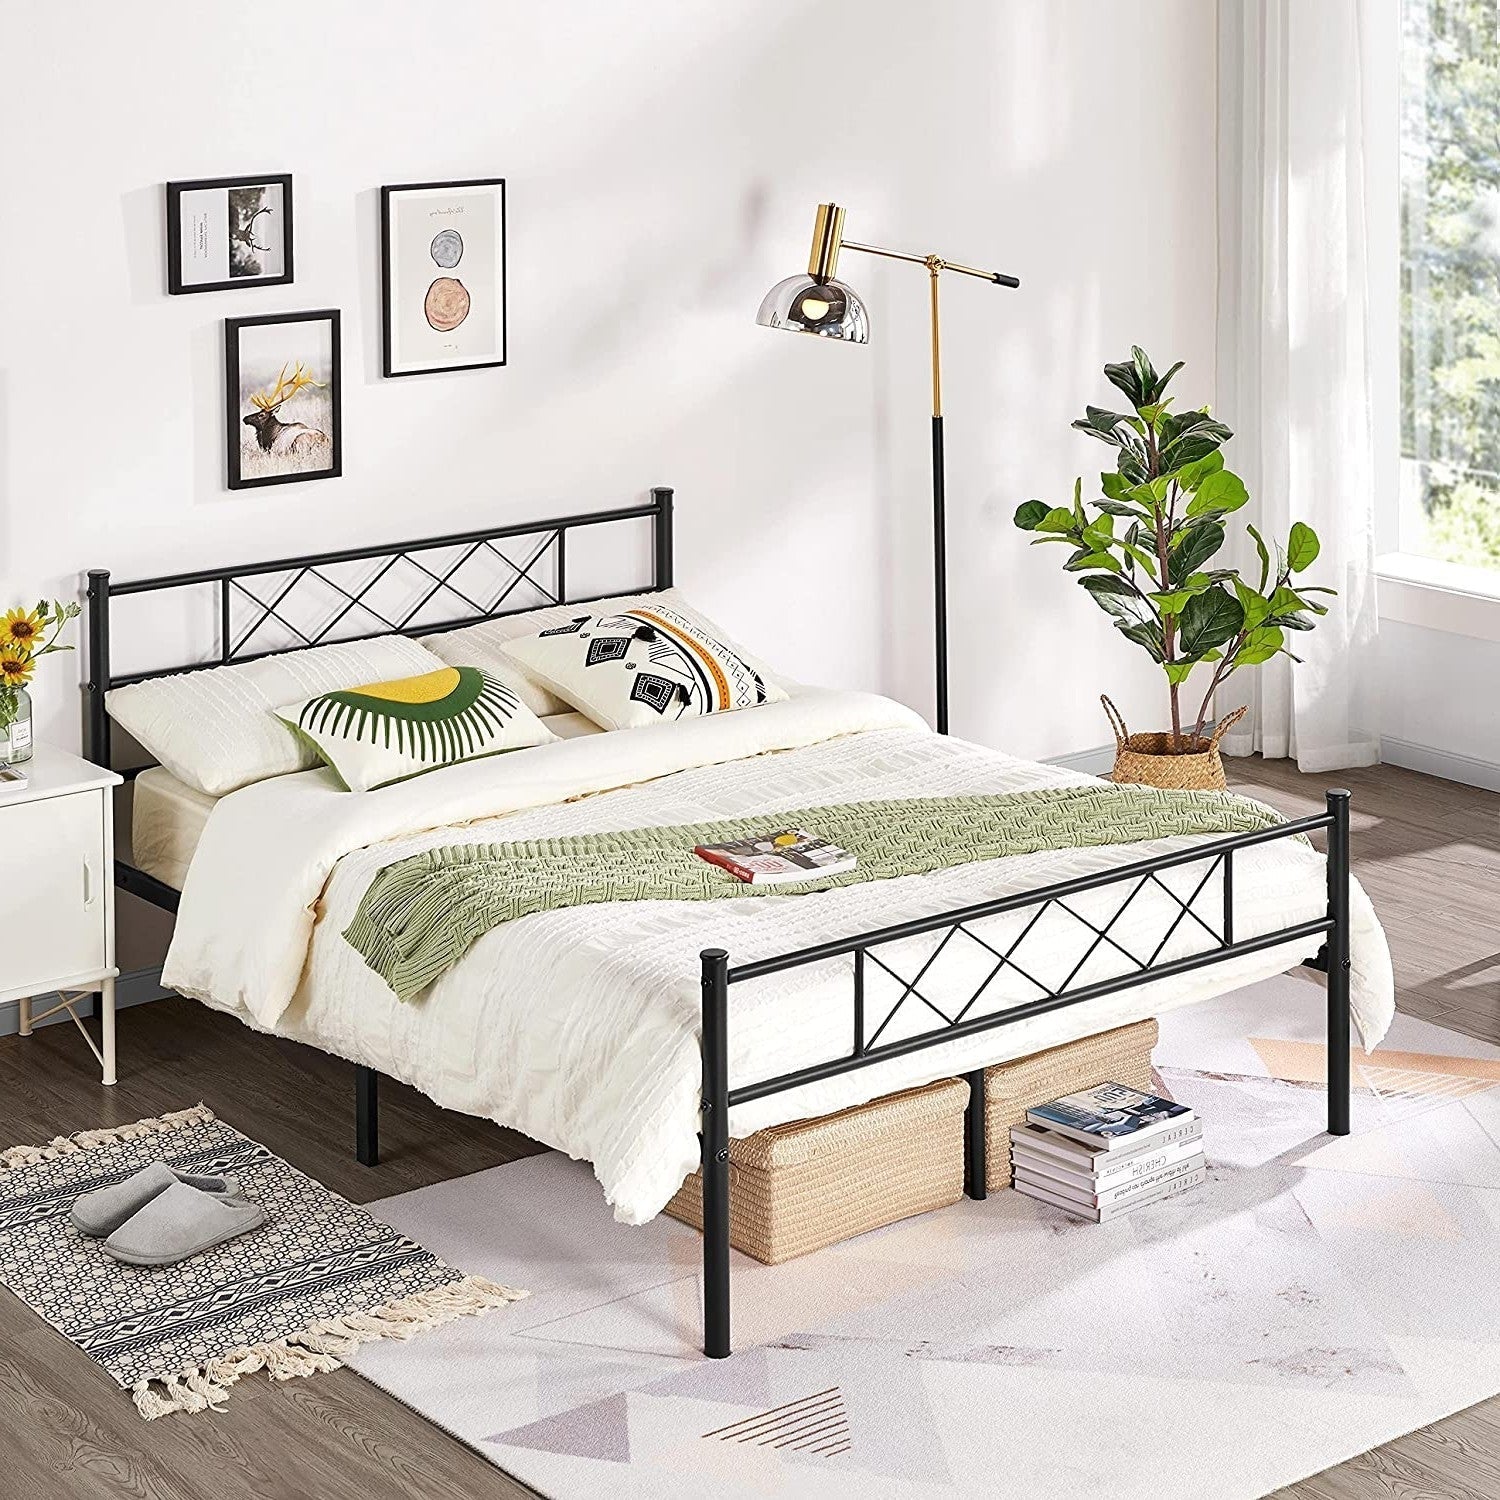 Bedroom > Bed Frames > Platform Beds - Queen Size Traditional Powder Coated Slatted Metal Platform Bed